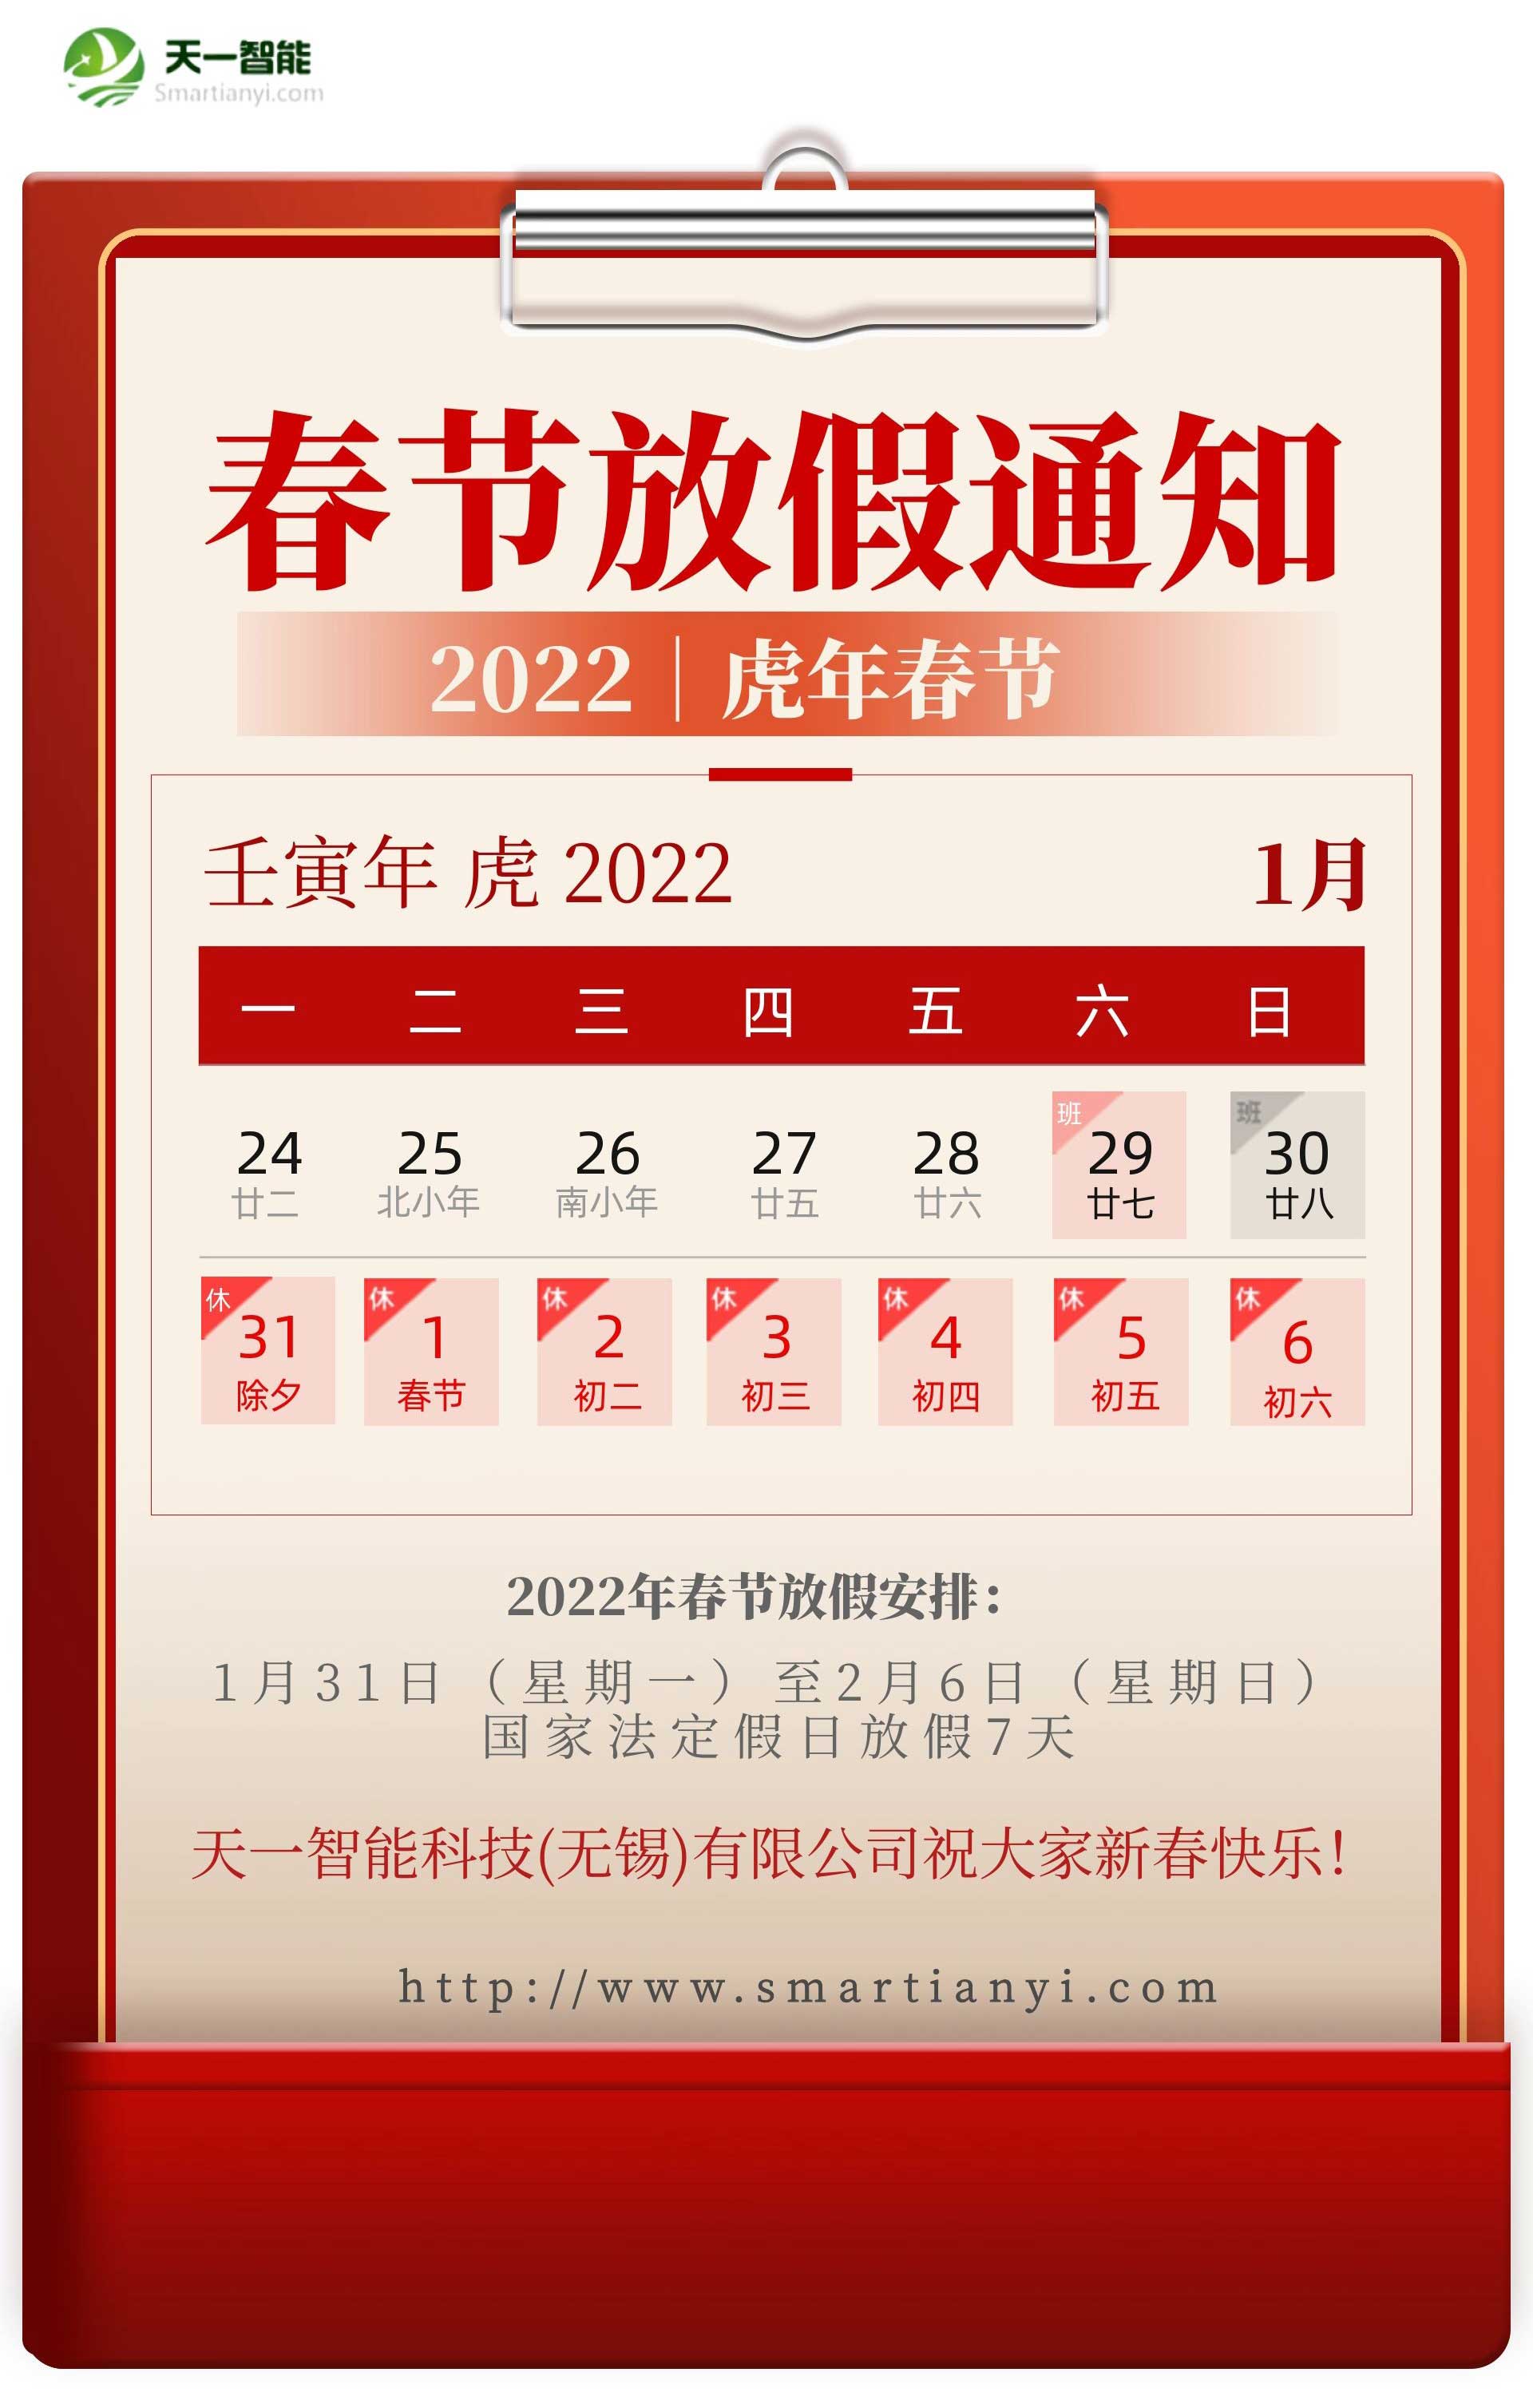 沙巴官网体育(中国)股份有限公司关于2022年春节放假安排的通知